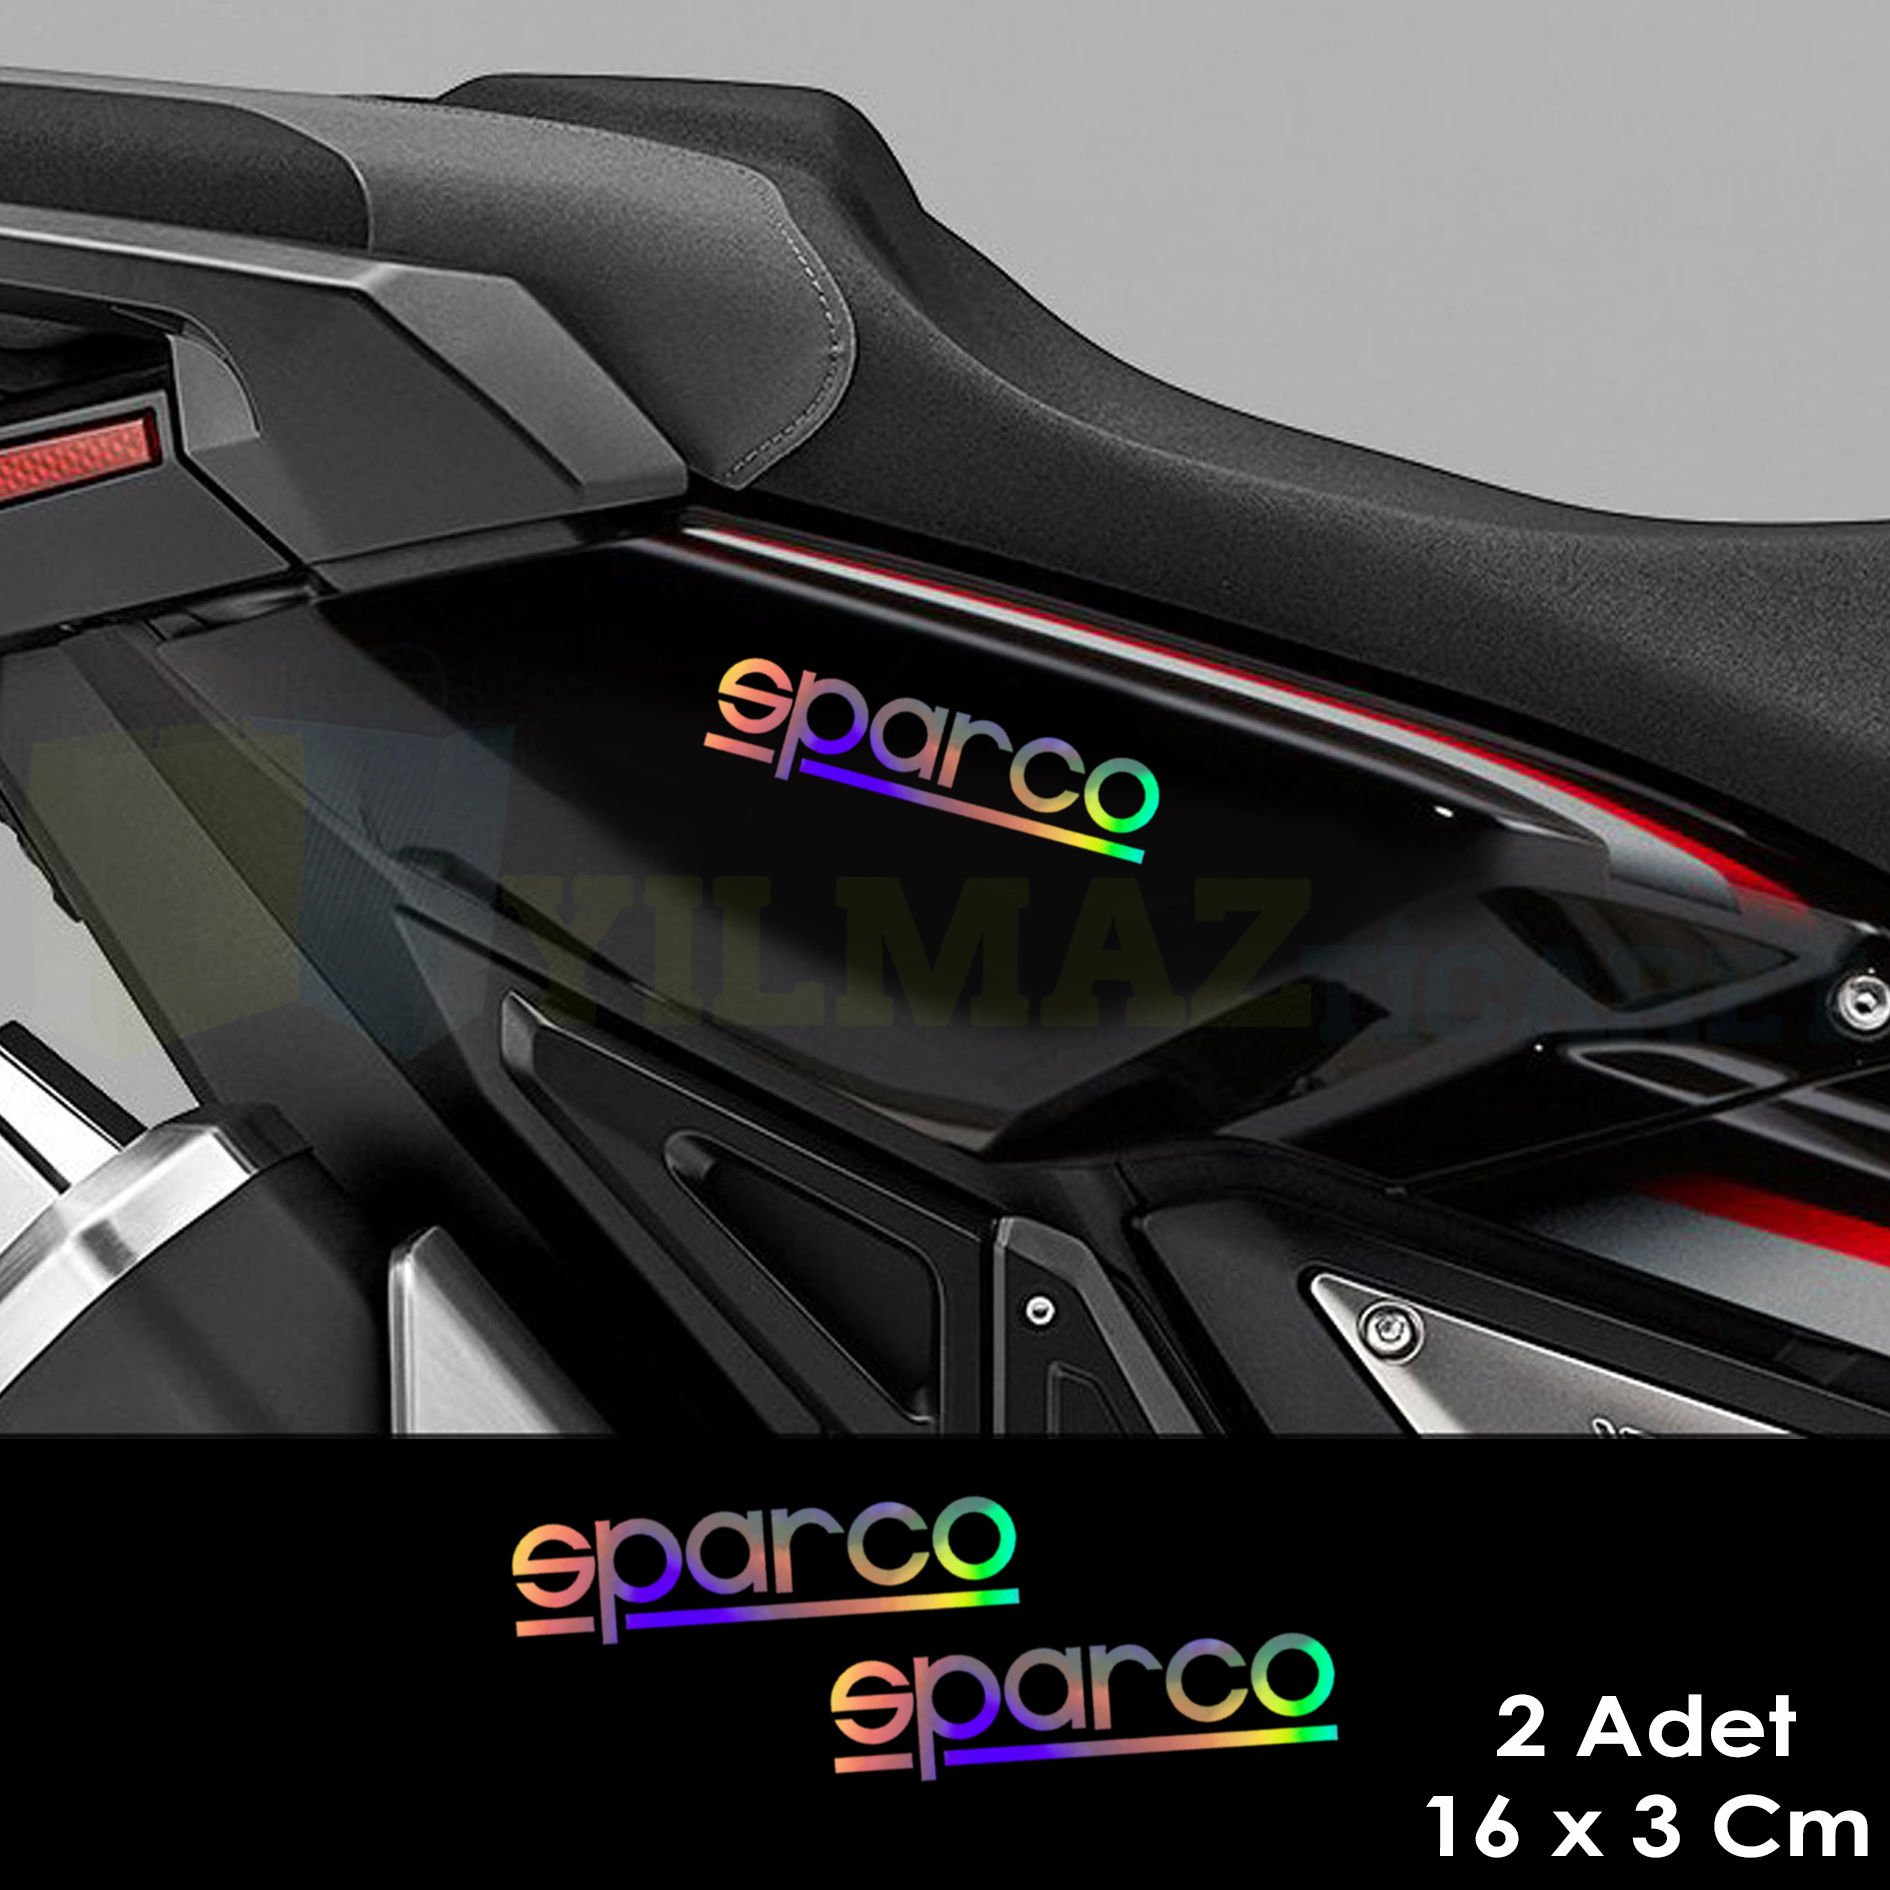 Sparco Hologram Oto Sticker Motosiklet Cam Araba Yapıştırma Çıkartma Aksesuar Modifiye Etiket 16x3cm